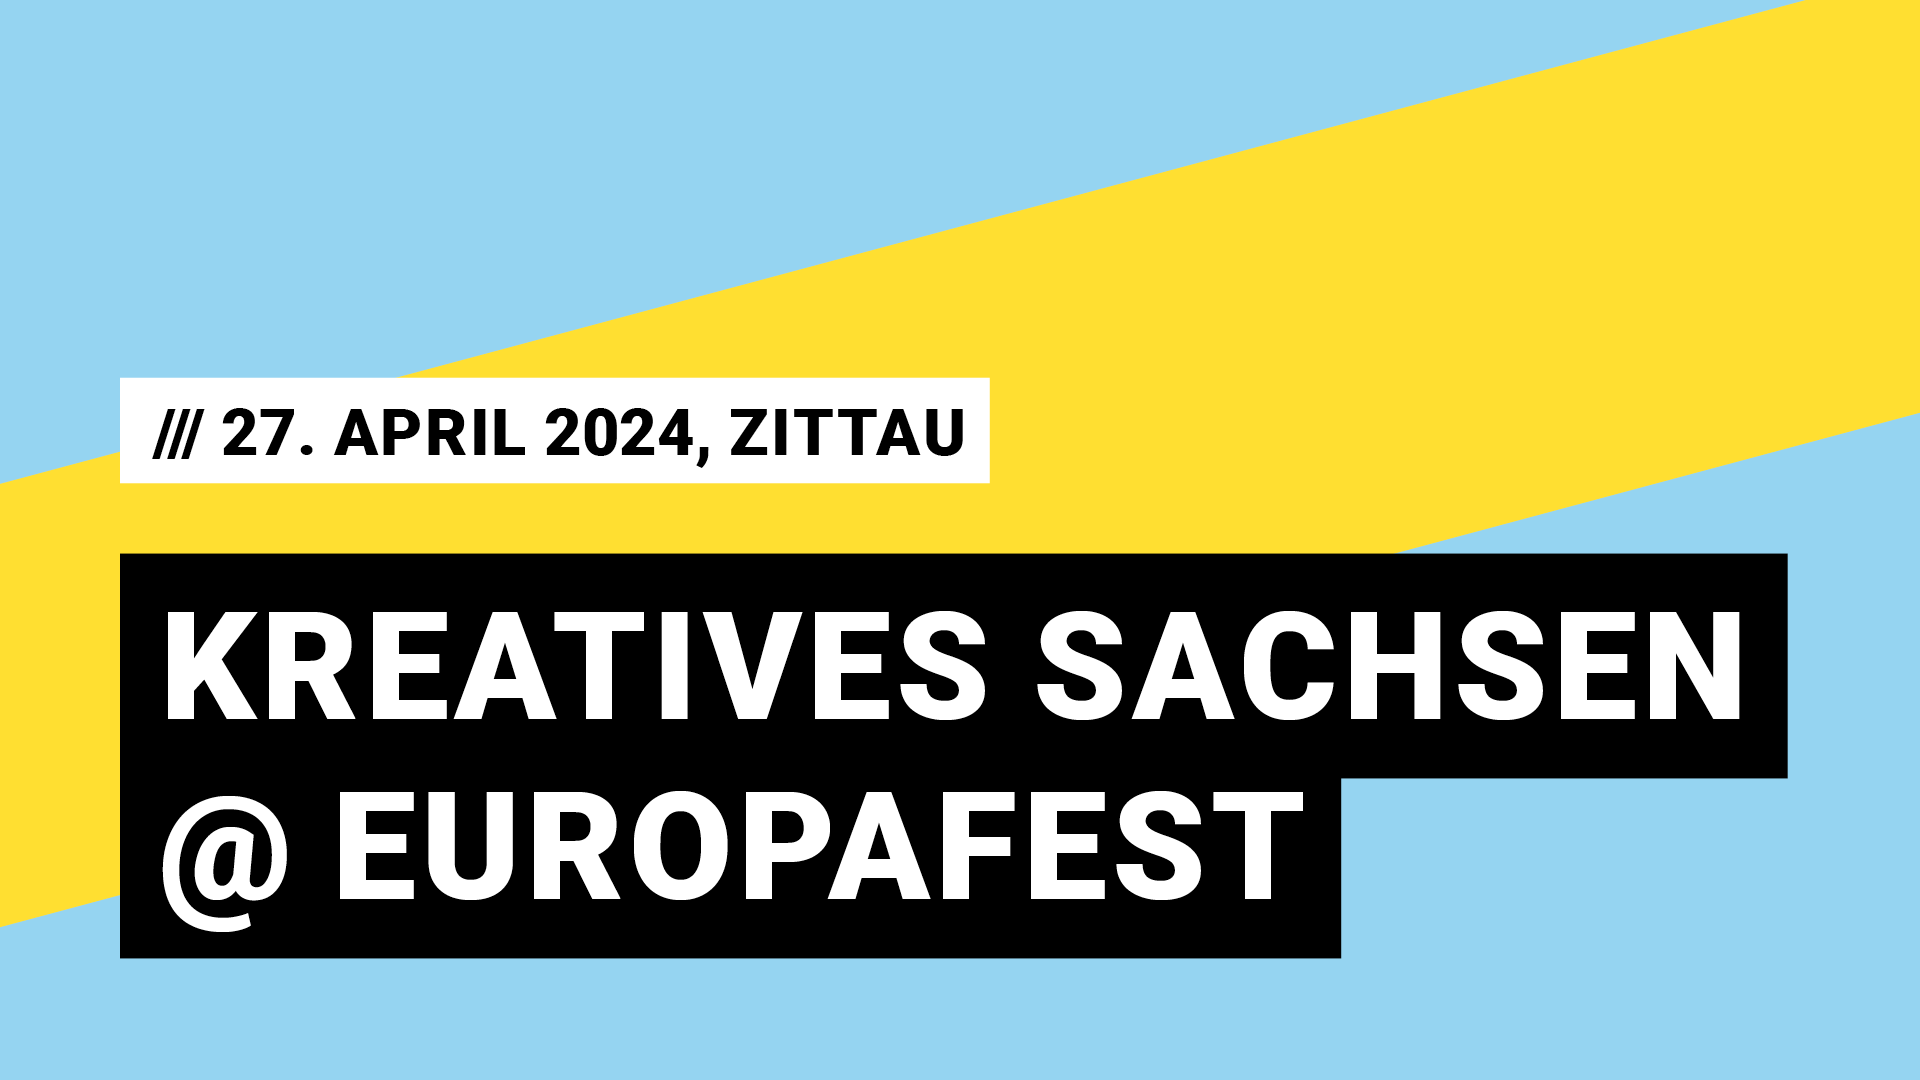 Titelbild Veranstaltung Kreatives Sachsen beim Europafest mit Datum 27. April 2024, Zittau